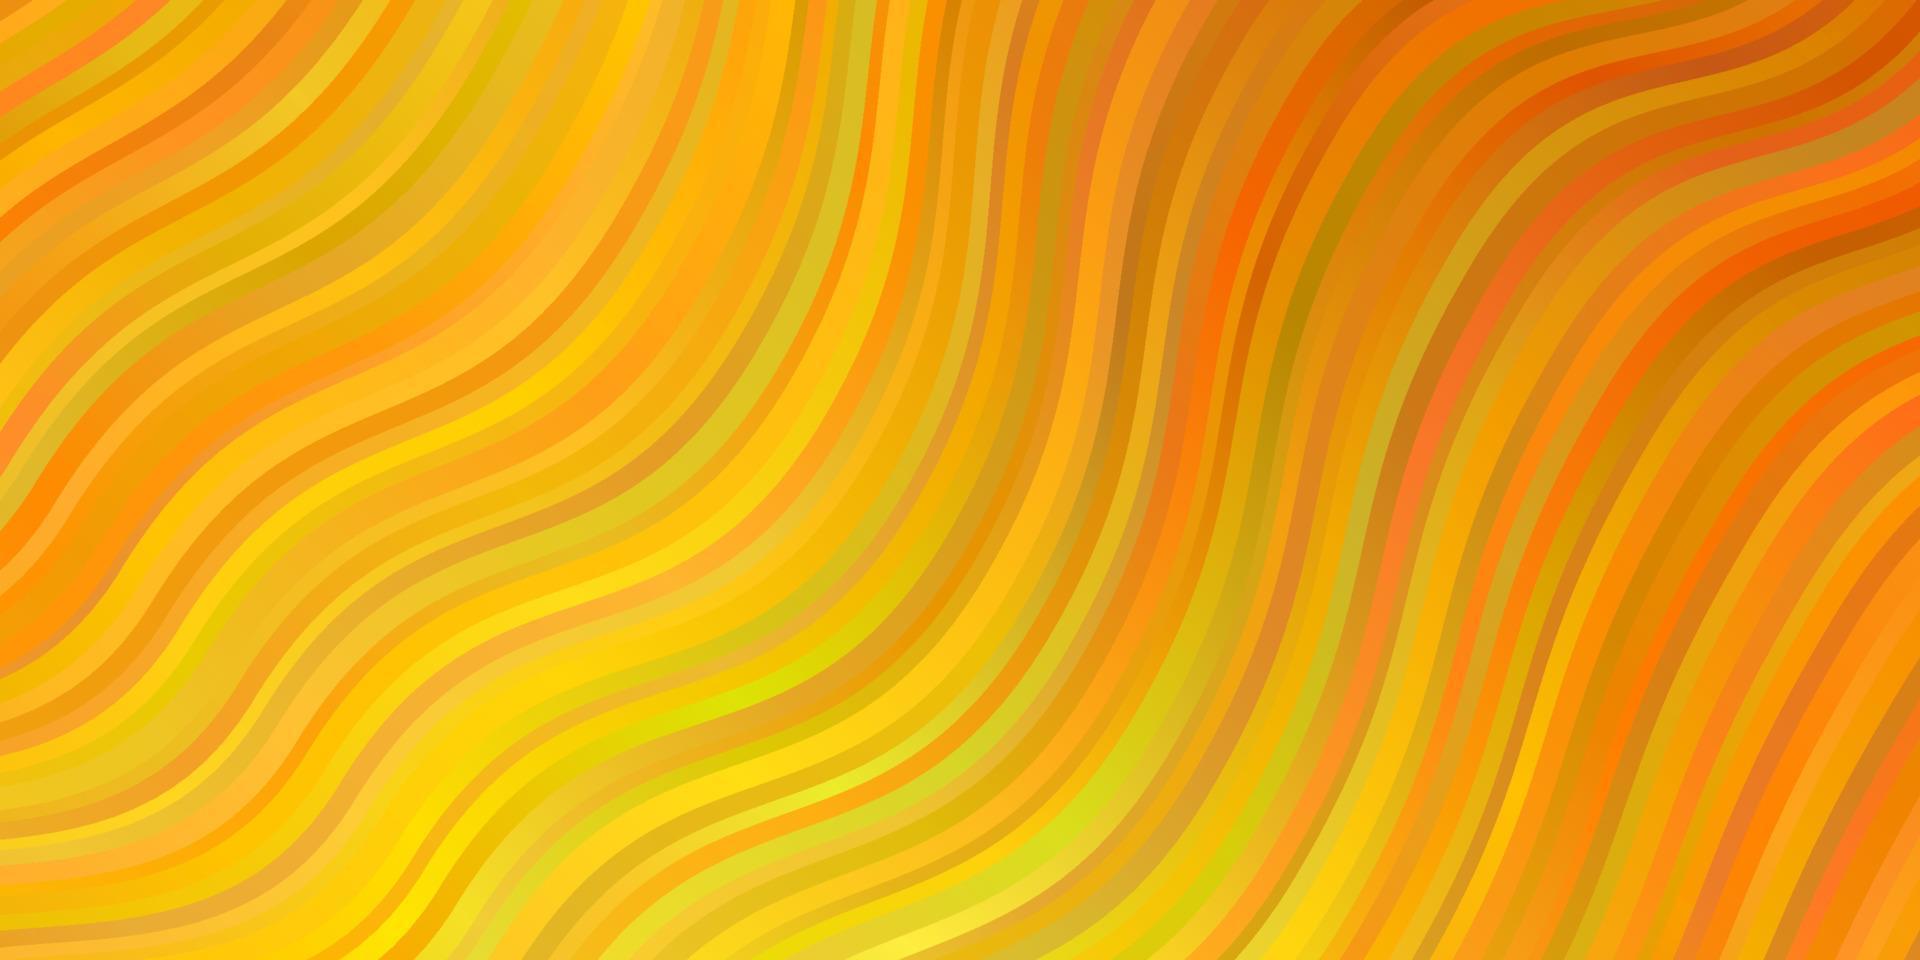 ljus orange vektormall med böjda linjer. vektor